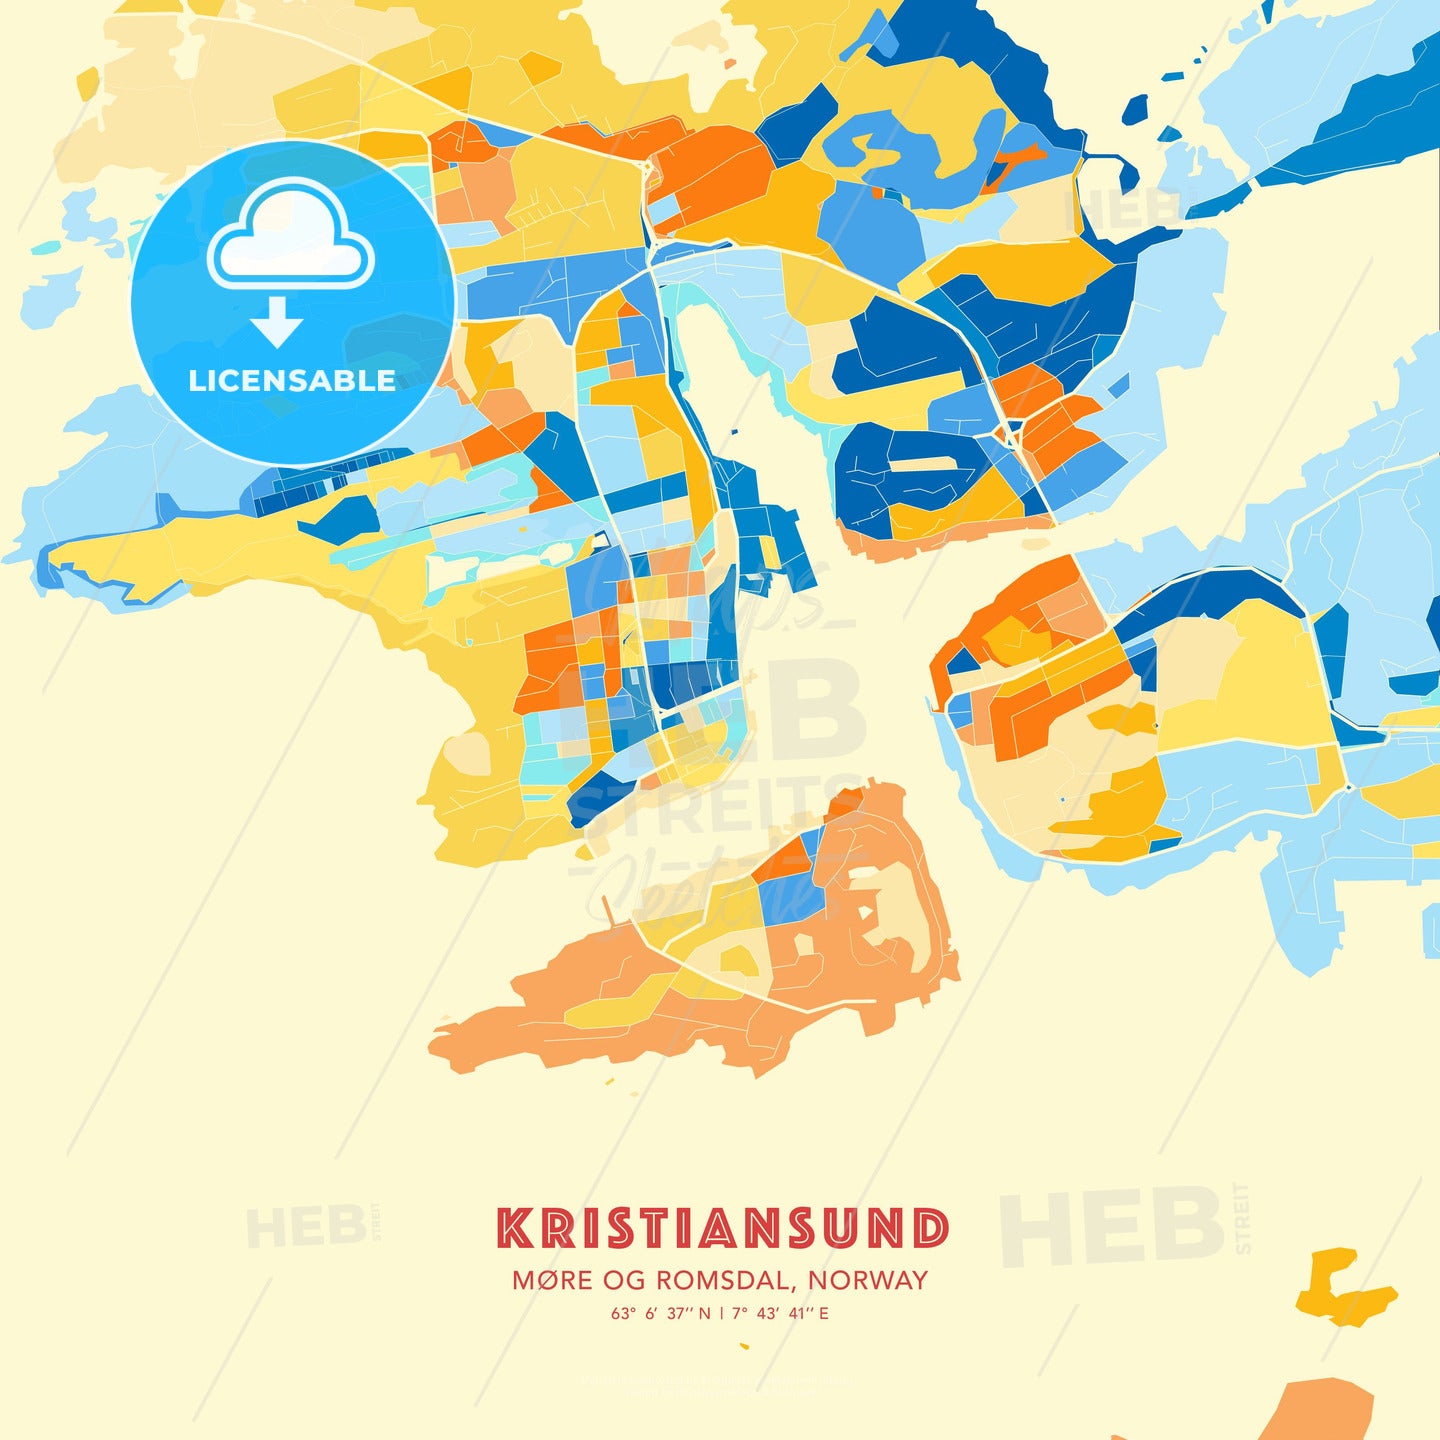 Kristiansund, Møre og Romsdal, Norway, map - HEBSTREITS Sketches